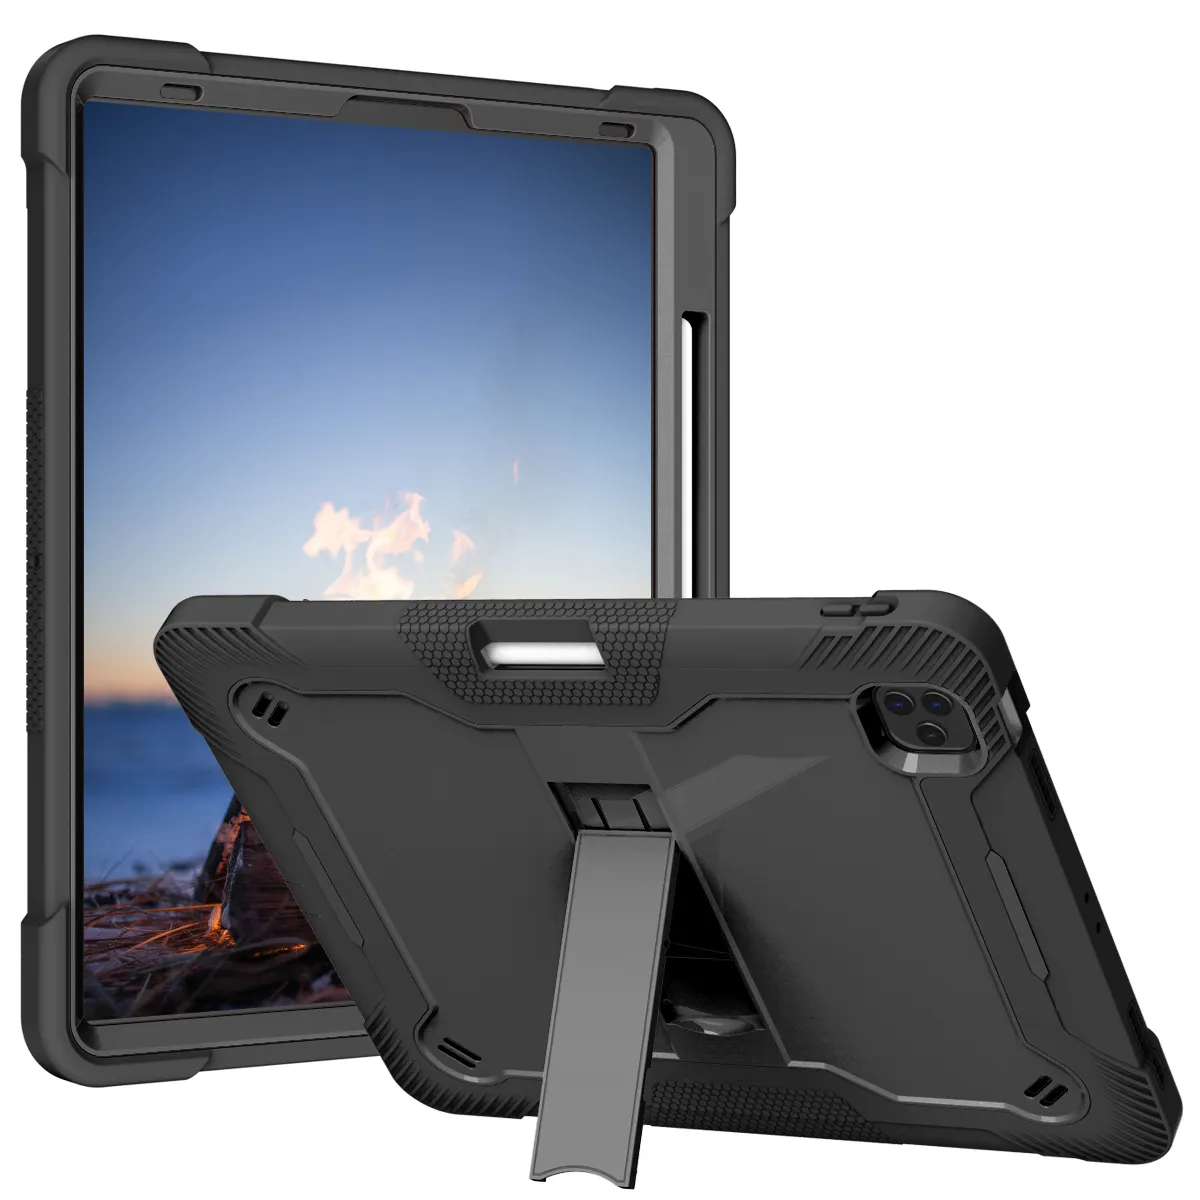 Sıcak satış silikon tampon koruyucu damla şok geçirmez ince sağlam Tablet kapak için iPad 12.9 2021 2020 2018 vaka